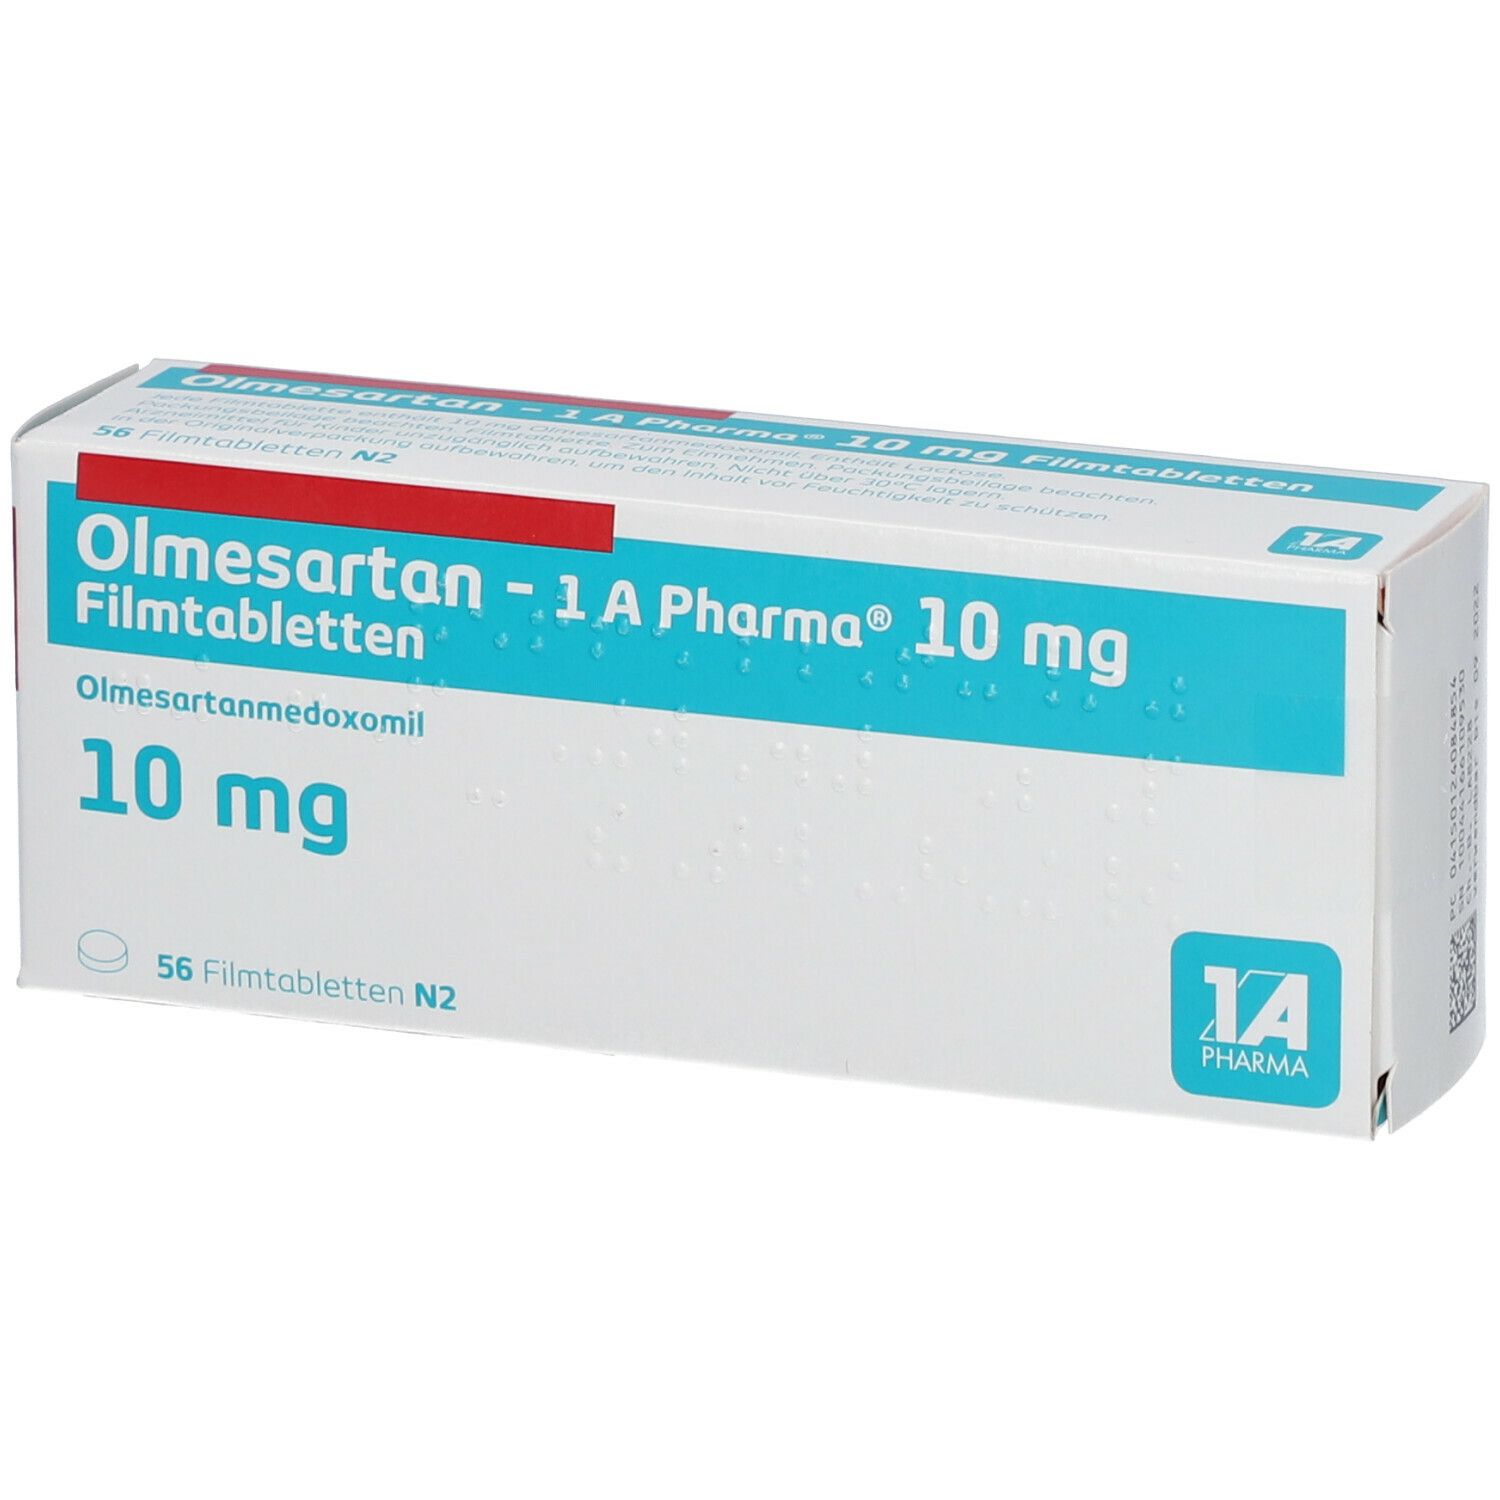 Olmesartan - 1 A Pharma® 10 mg